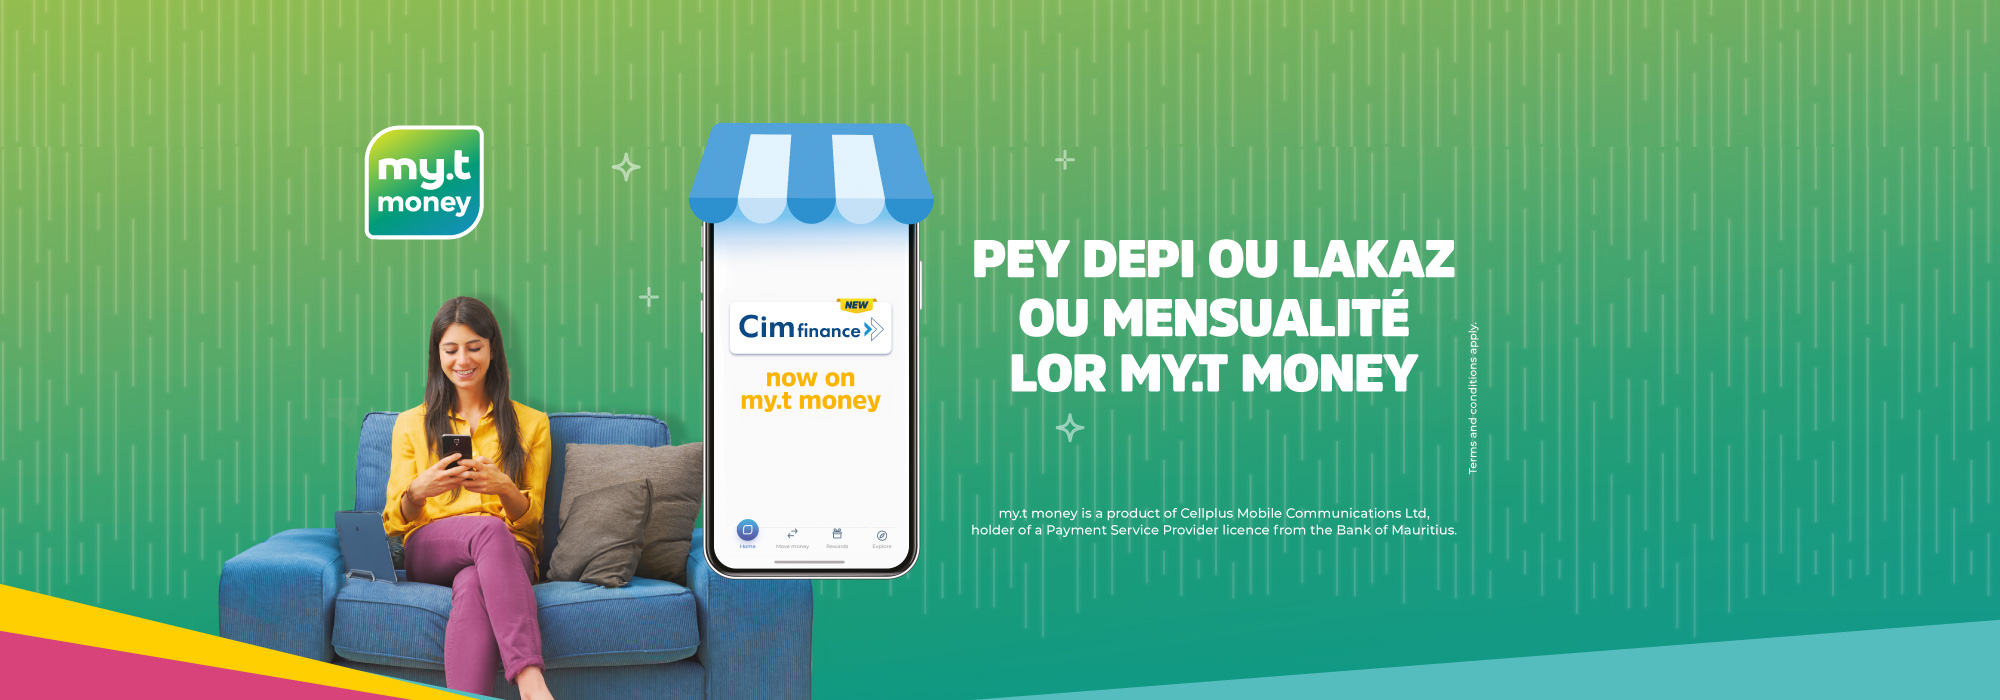 myt.mu - myt money cim finance